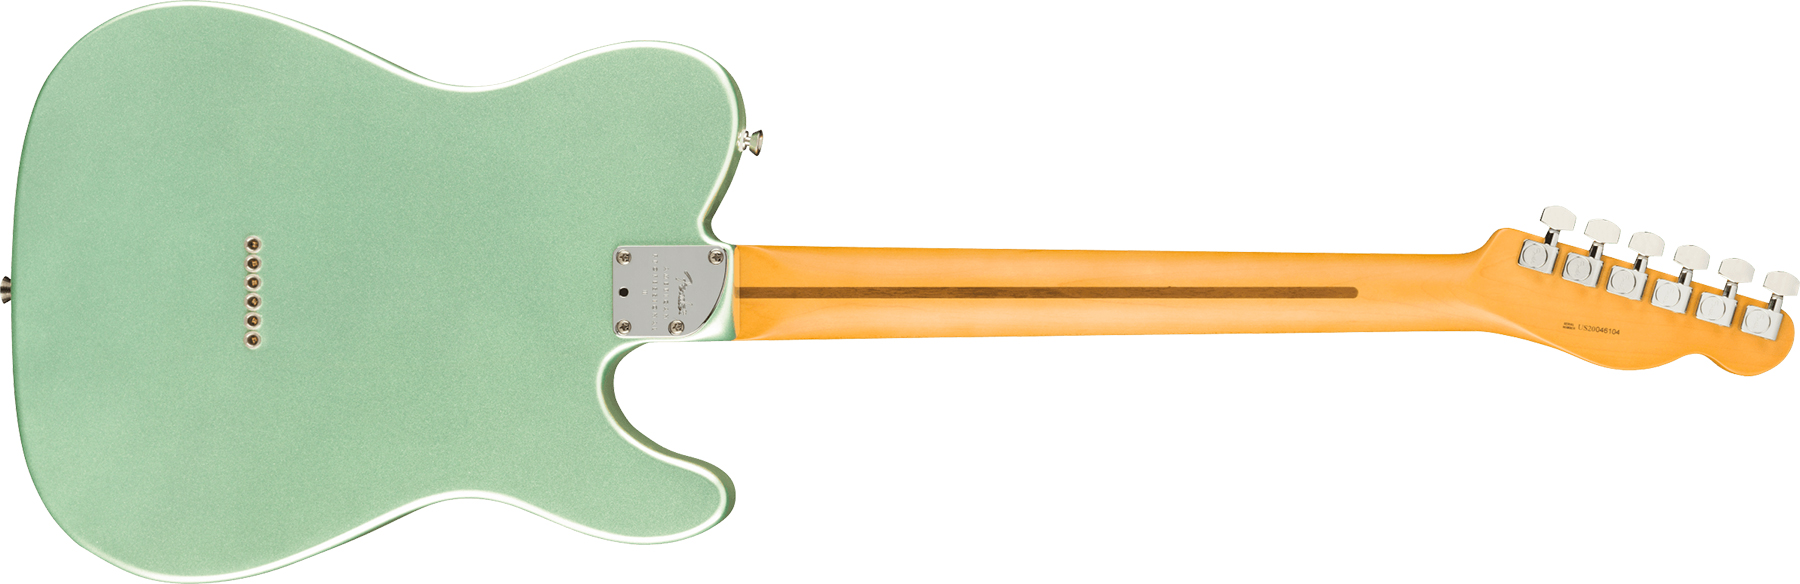 Fender Tele American Professional Ii Lh Gaucher Usa Mn - Mystic Surf Green - Linkshandige elektrische gitaar - Variation 1